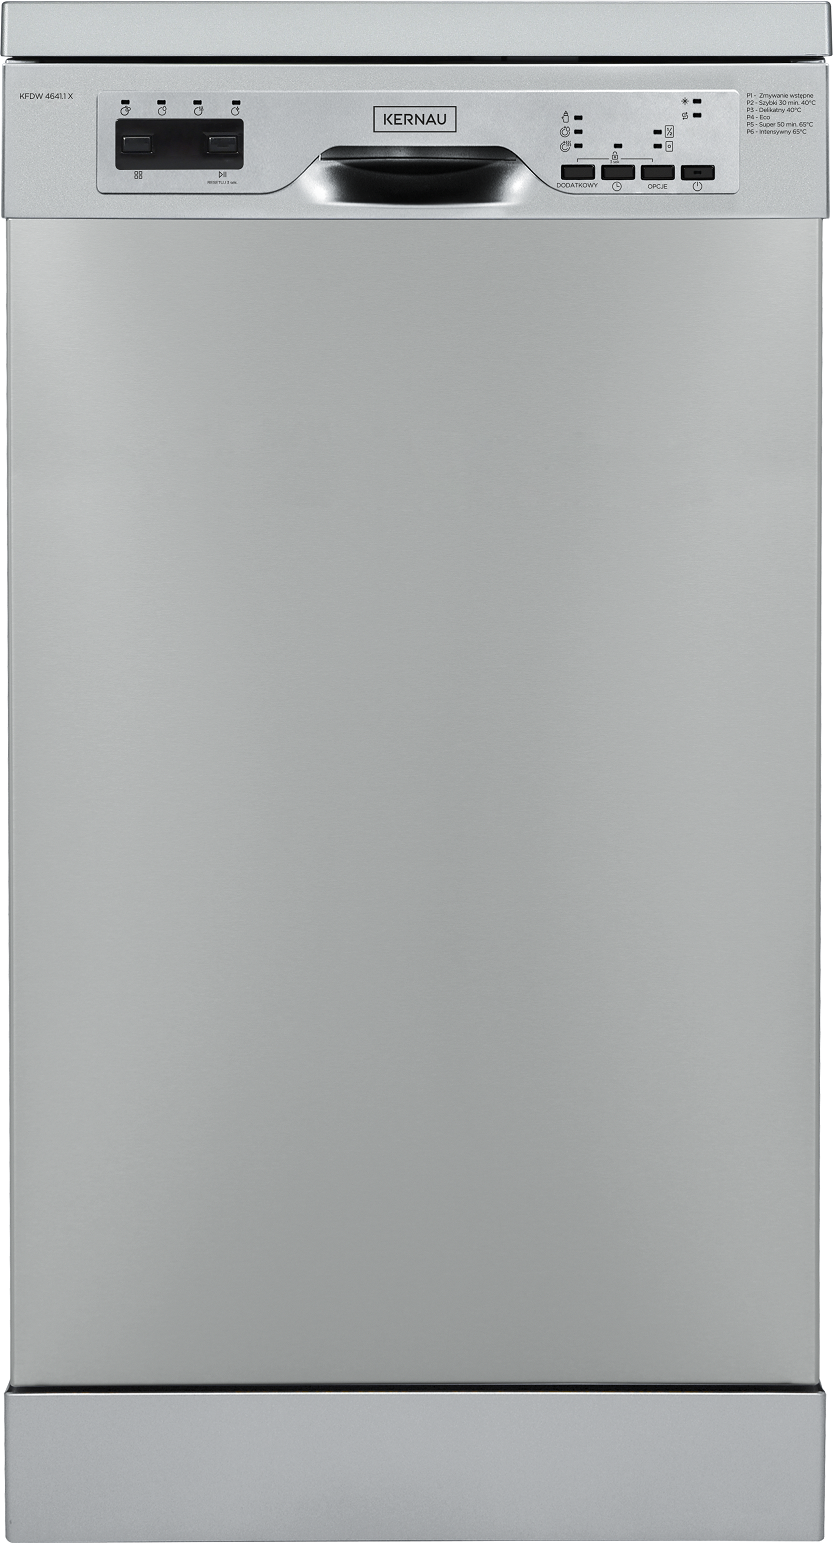 Посудомоечная машина KERNAU KFDW 4641.1 X